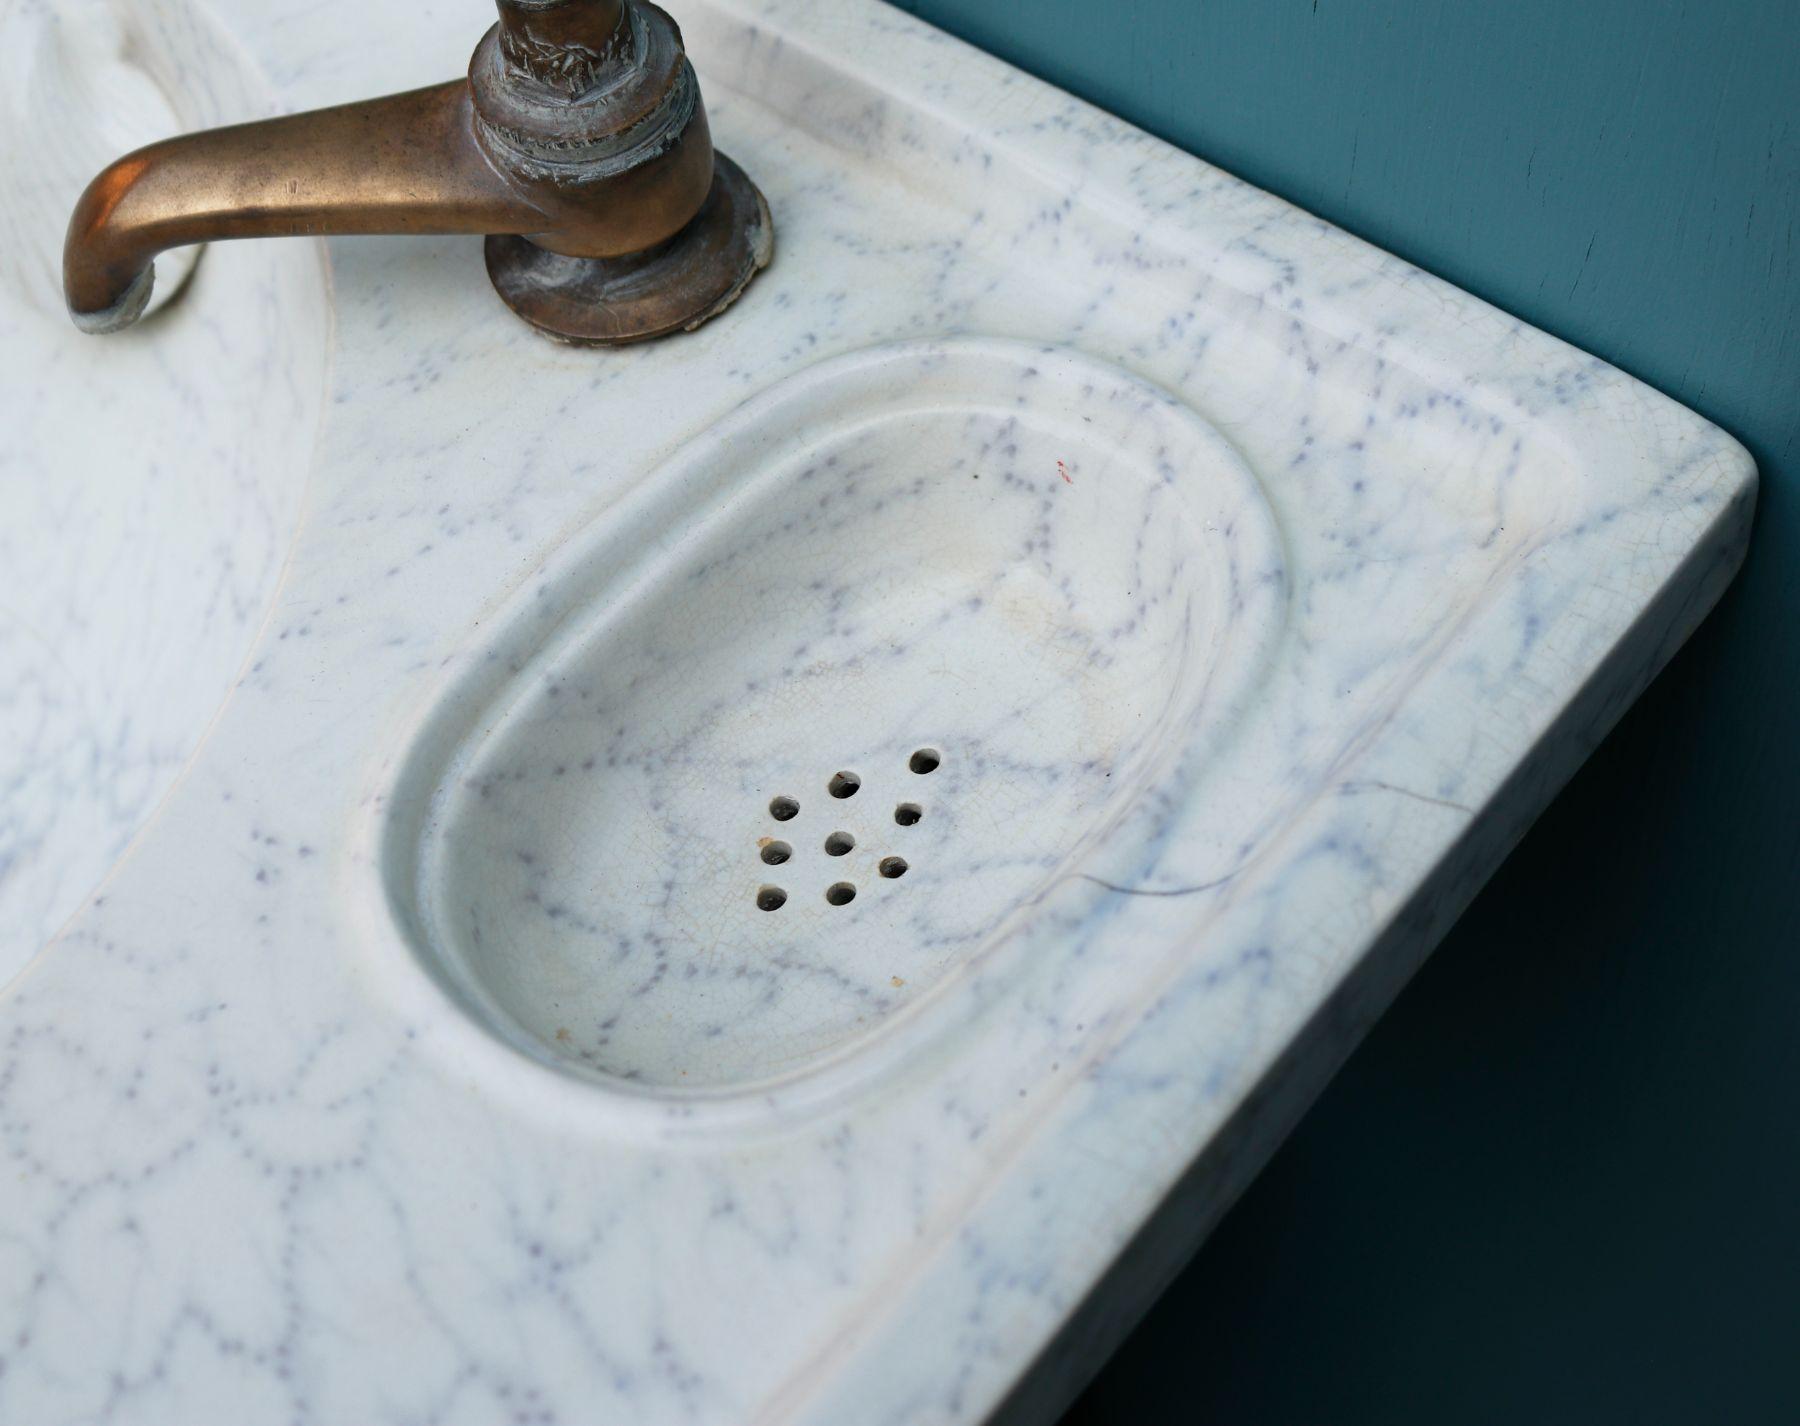 Ancien lavabo ou évier victorien, avec une finition effet marbre, peint à la main sous la glaçure. Comprend les robinets d'origine.

Porte-savons décoratifs en forme de coquille, à débordement et à vidange.